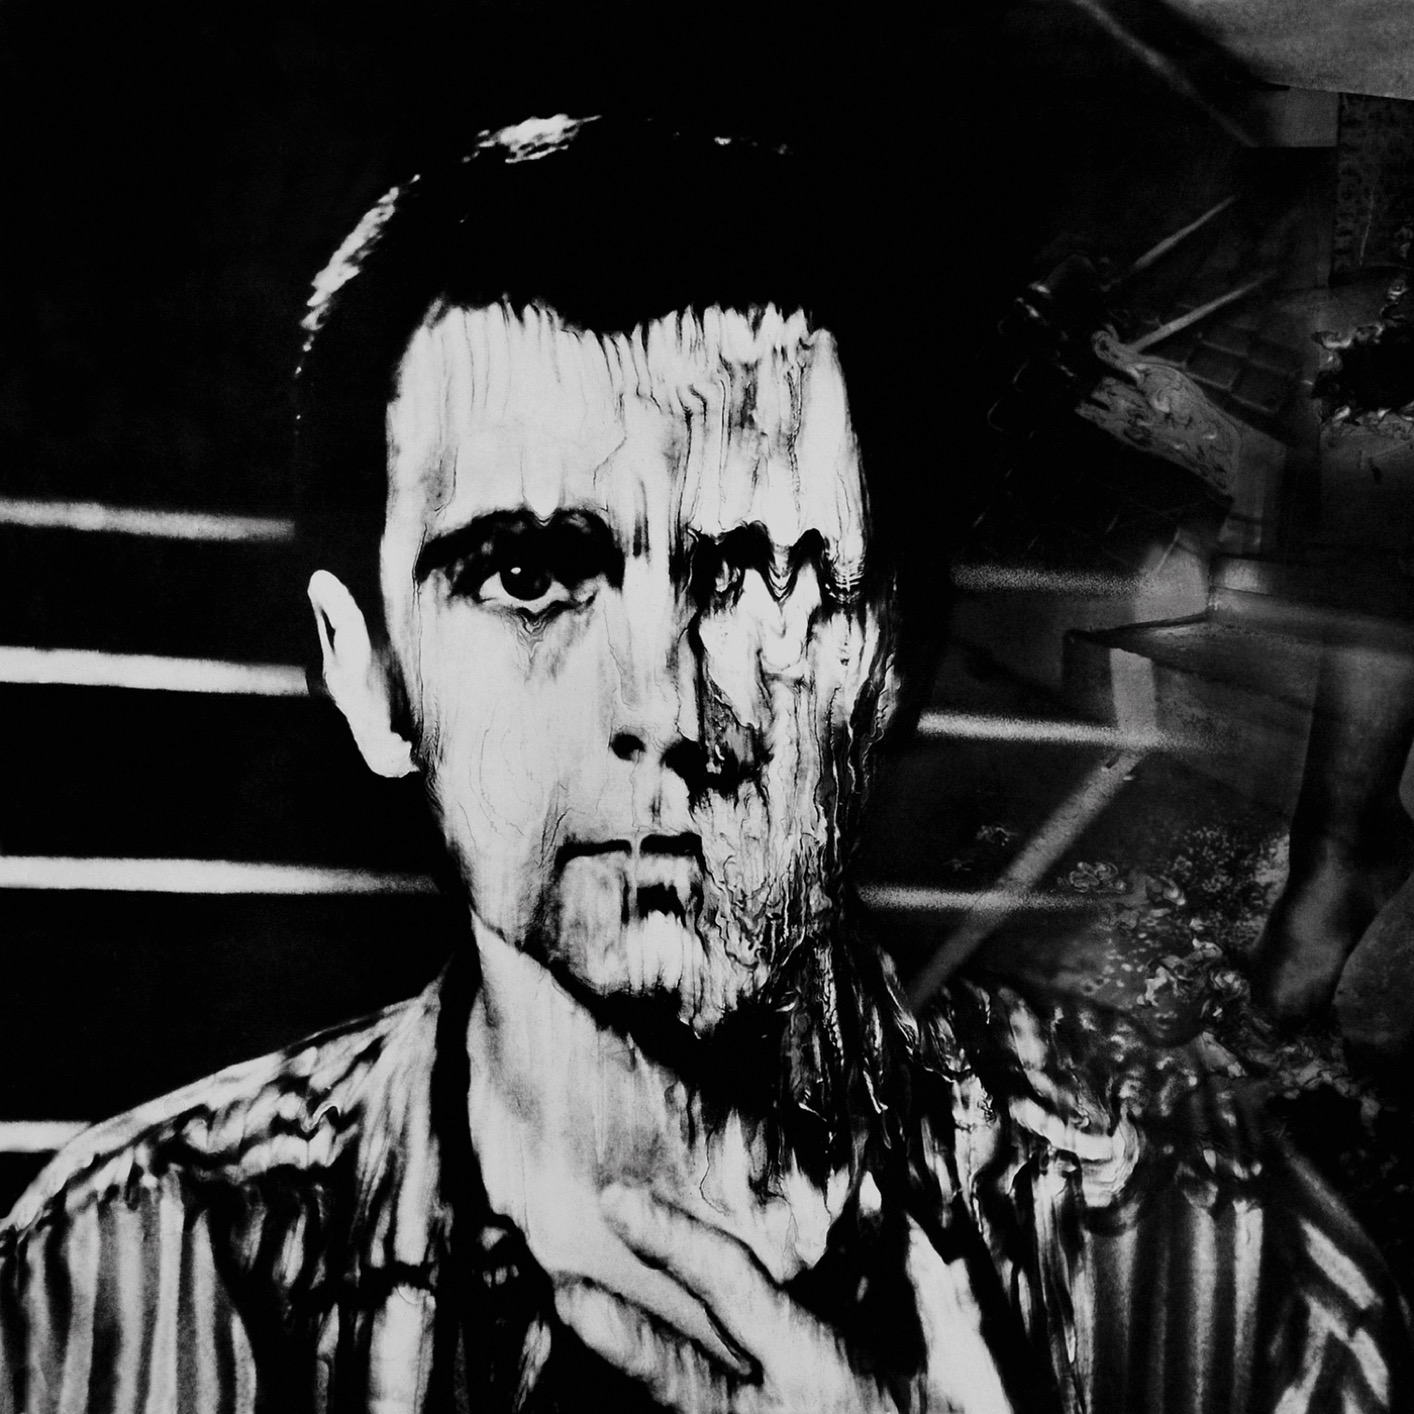 Peter Gabriel – Peter Gabriel 3: Melt (Remastered) (1980/2019) [FLAC 24bit/96kHz]